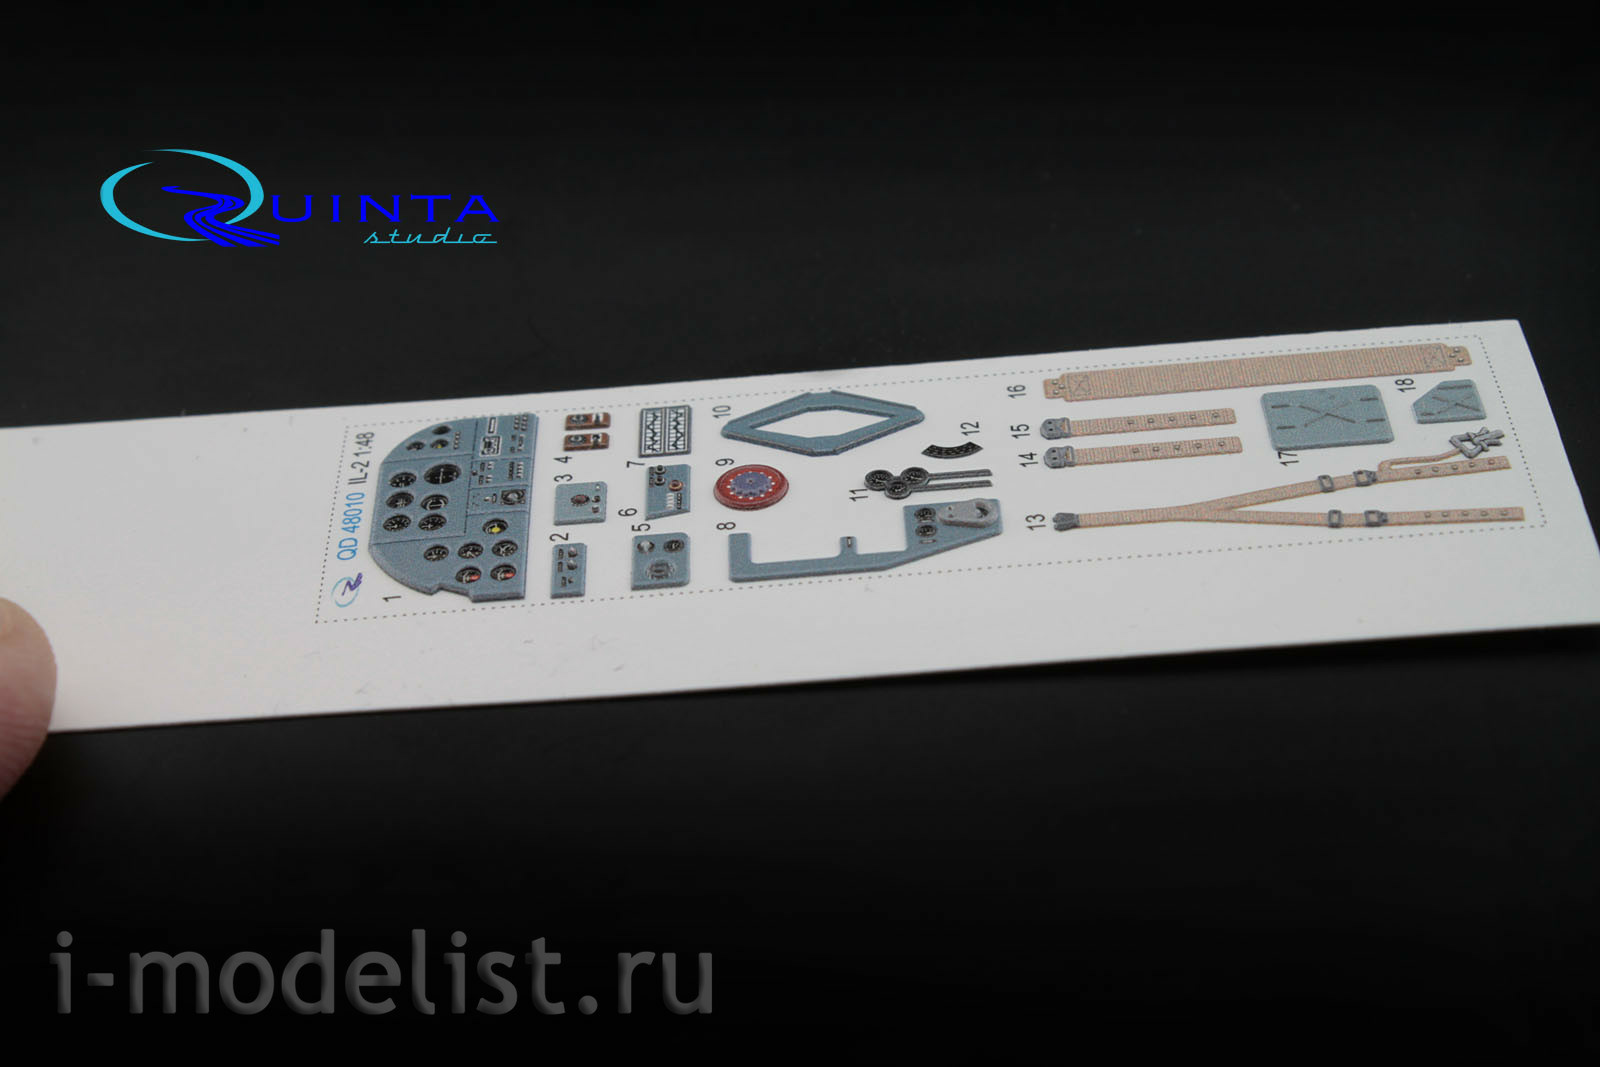 QD48010 Quinta Studio 1/48 3D Декаль интерьера кабины Ил-2 (для моделей Accurate/Italery/Academy/Eduard)